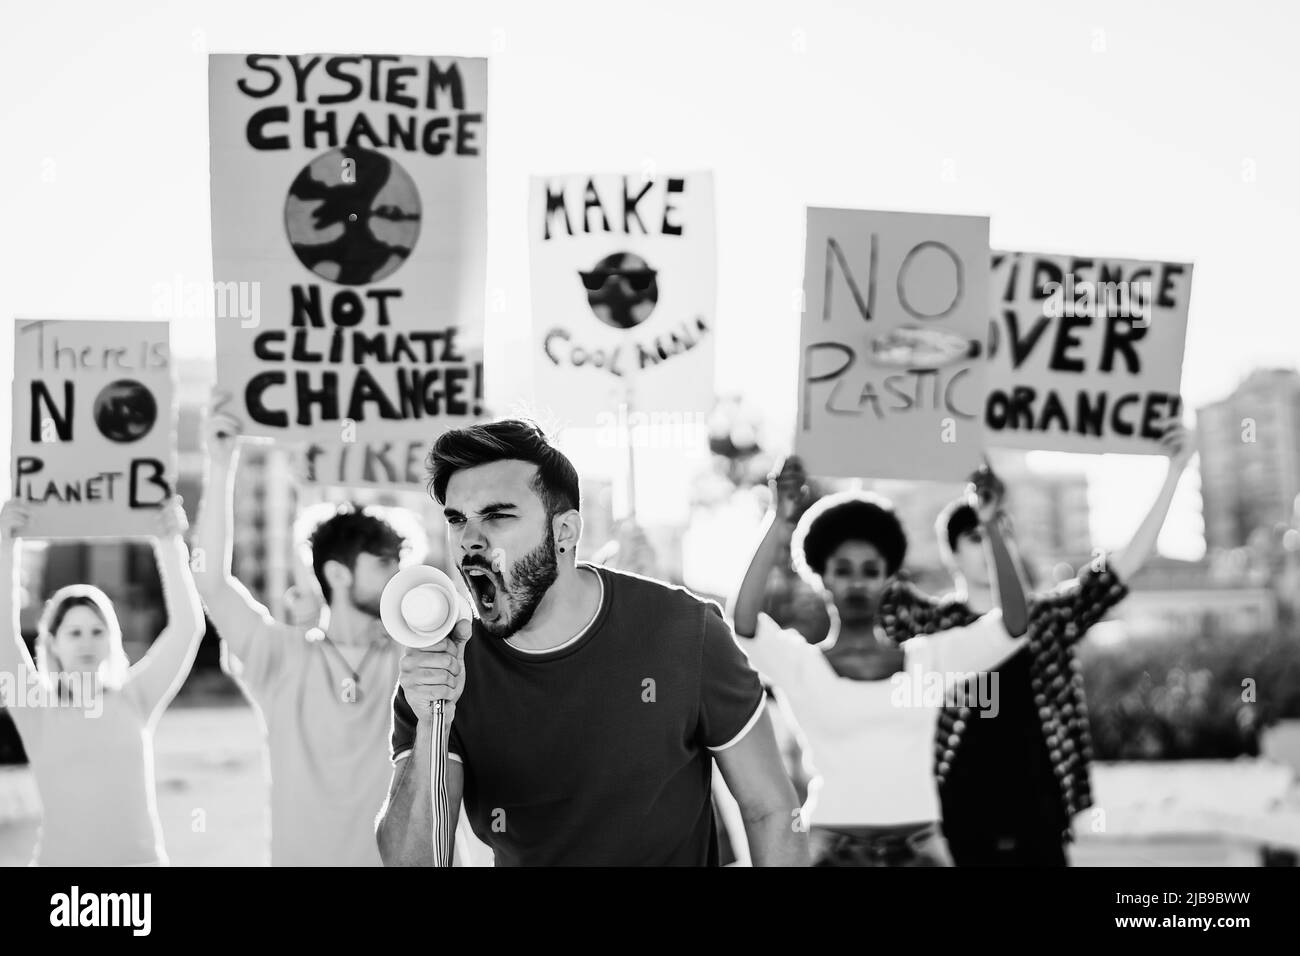 Gruppe junger Aktivisten, die für den Klimawandel protestieren - Konzept der globalen Erwärmung Stockfoto